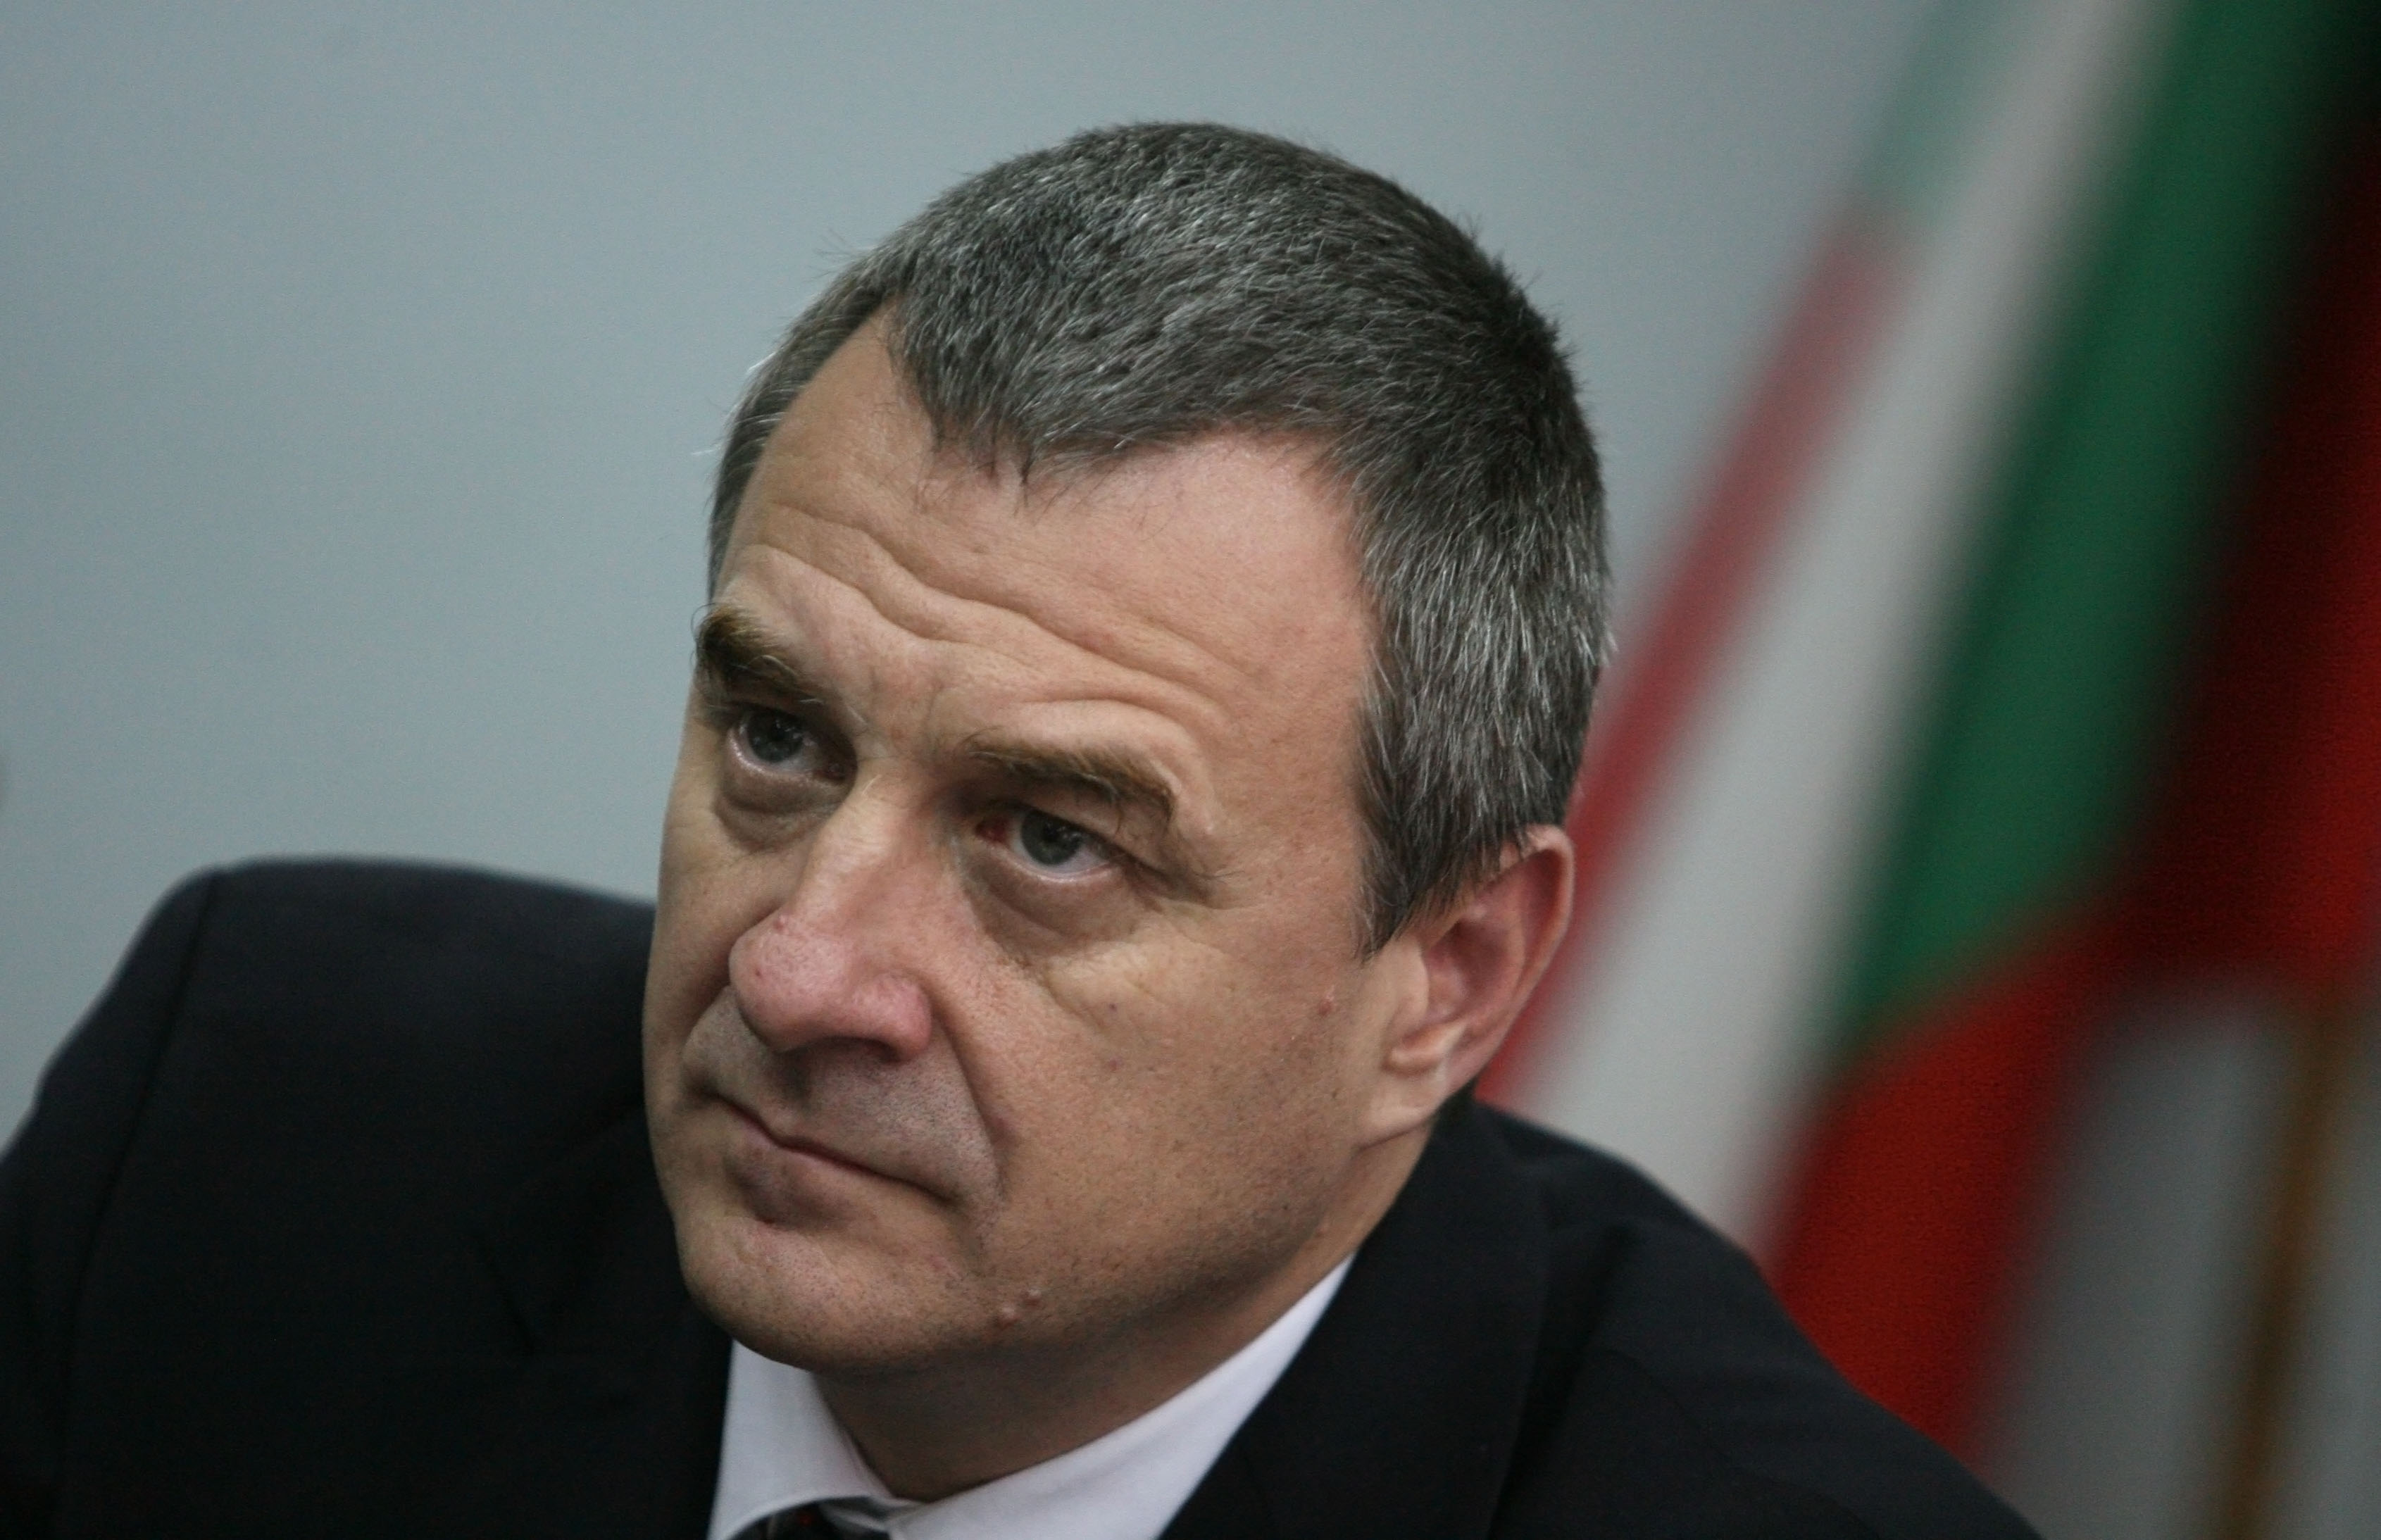 Цветлин Йовчев каза още, че за него протестите отразяват кризата в България